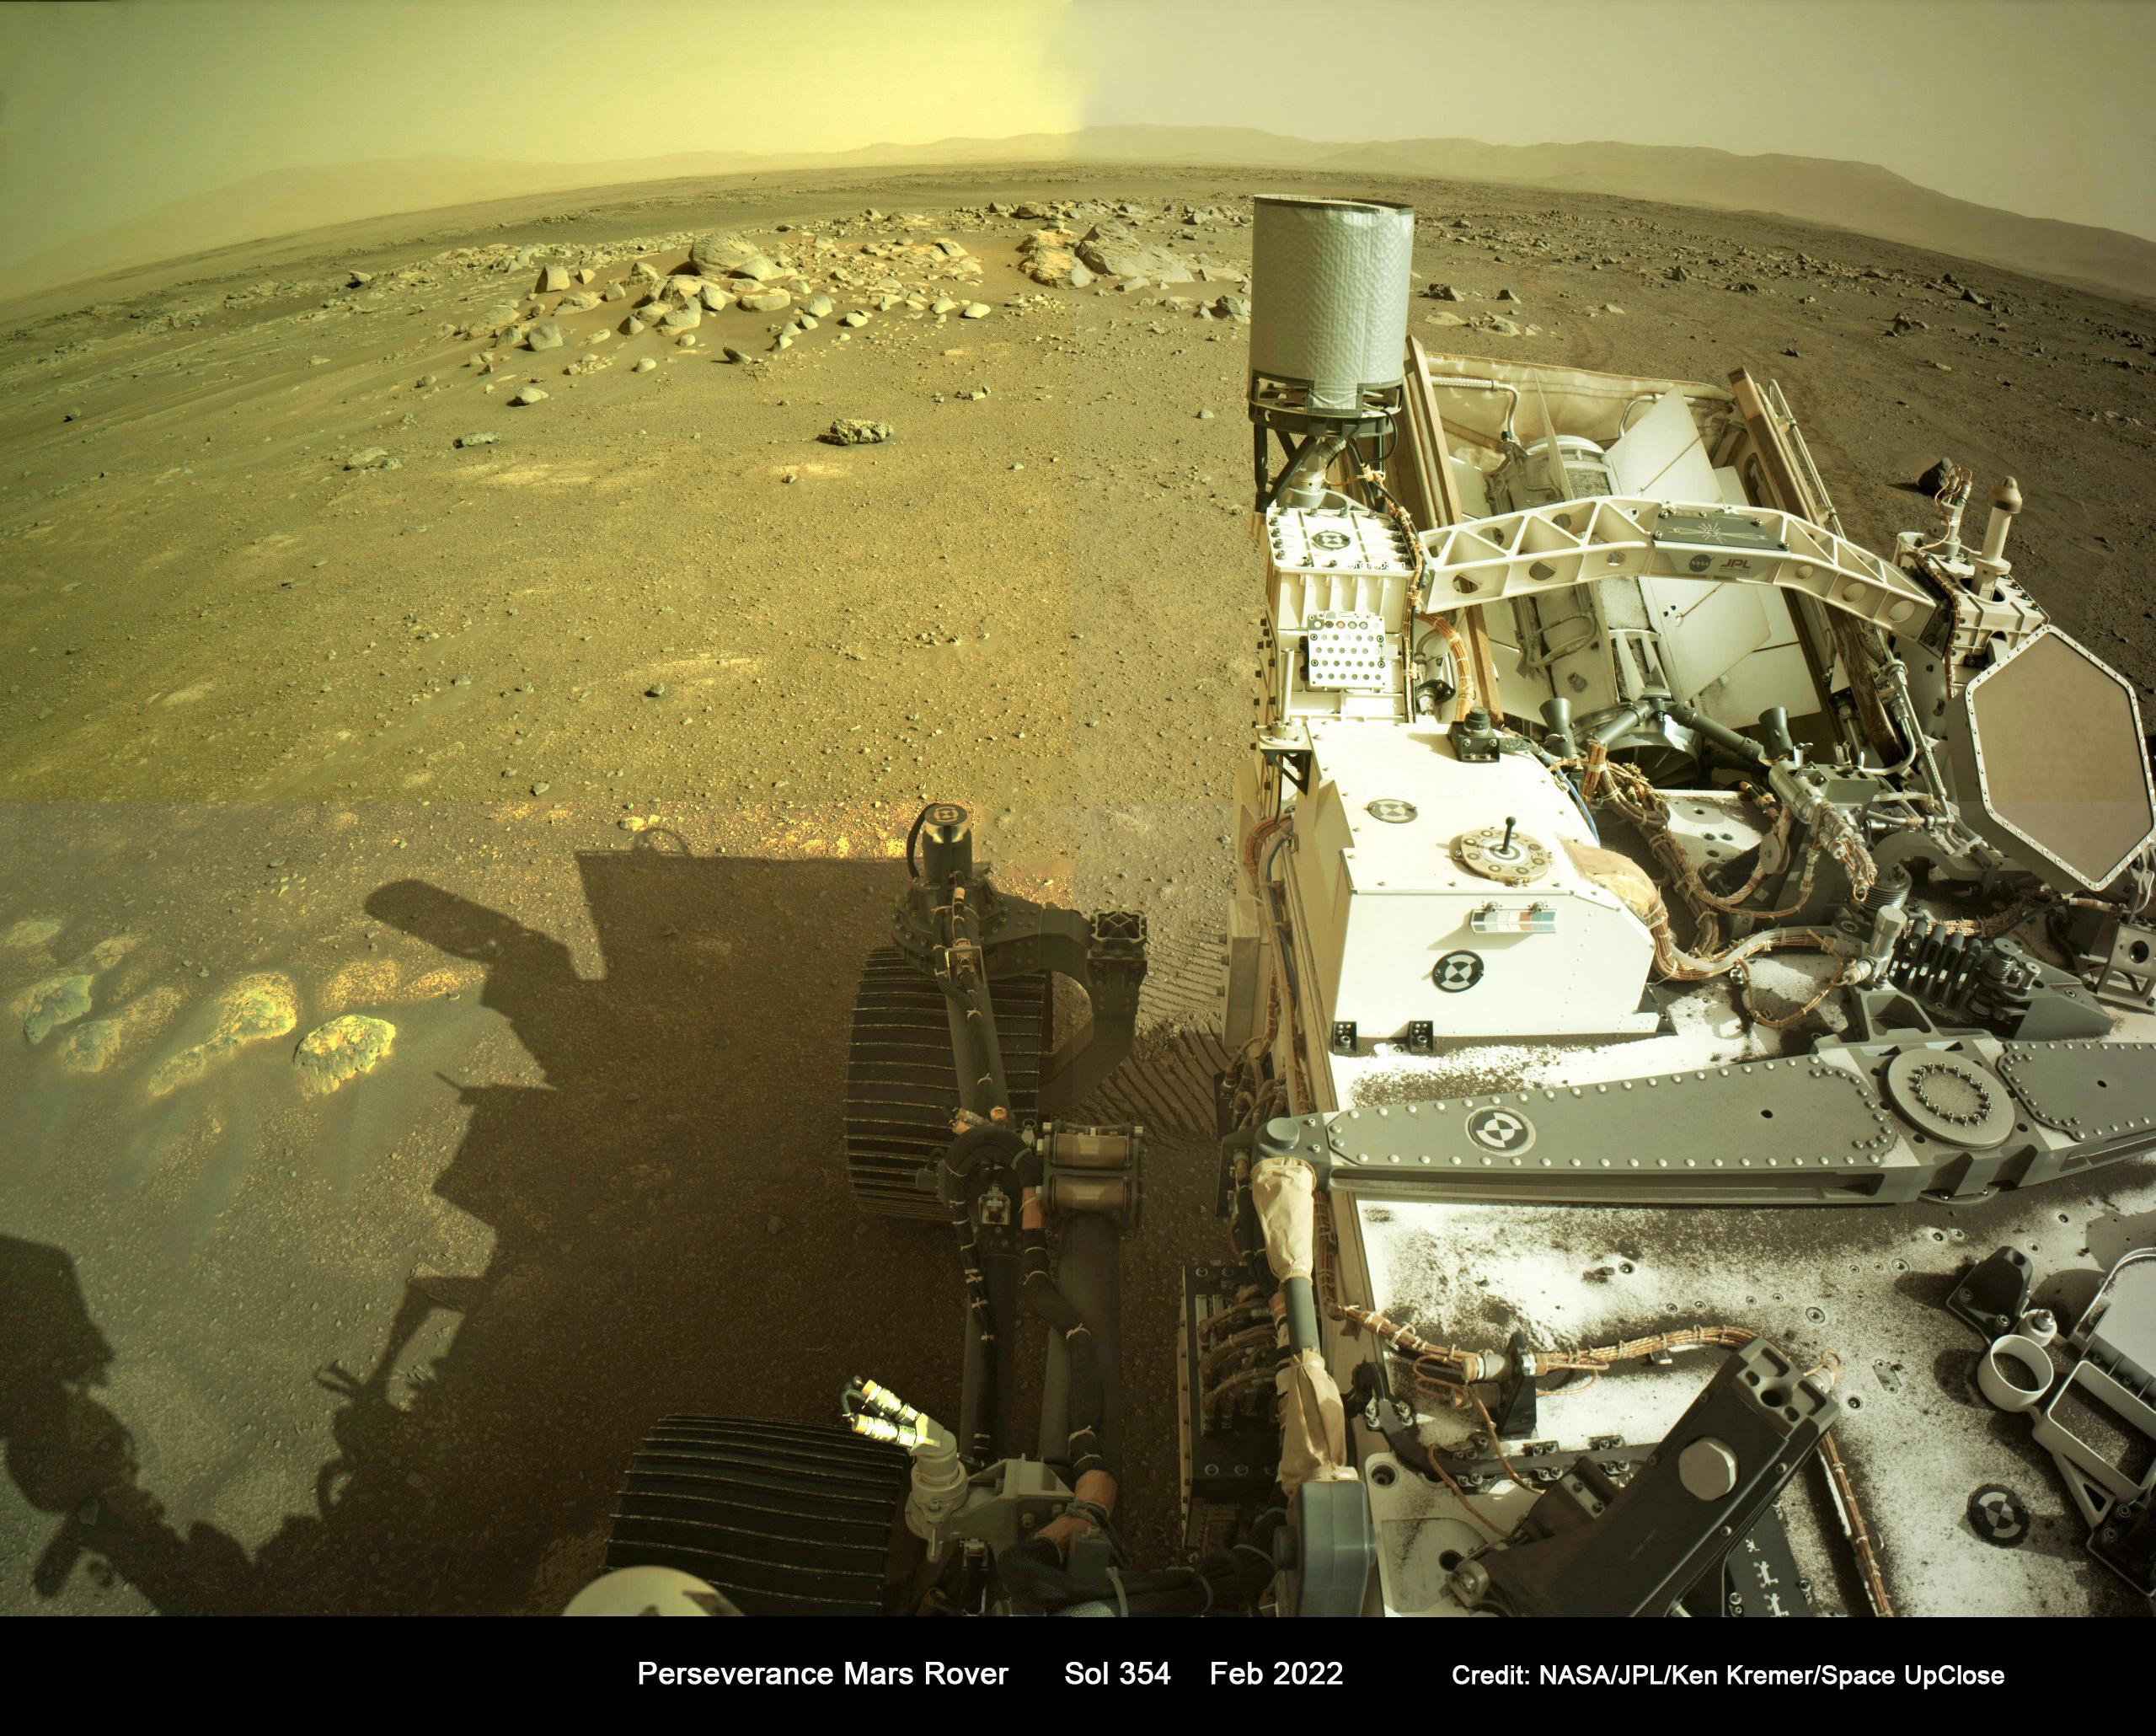 صورة بصبغة مصفرّة تظهر جزء من تجهيزات عربة المثابرة الجوّالة وبجانبها ظلها بينما تنبسط الأرض المريخية بصخورها وتلوح مرتفعات في البعيد